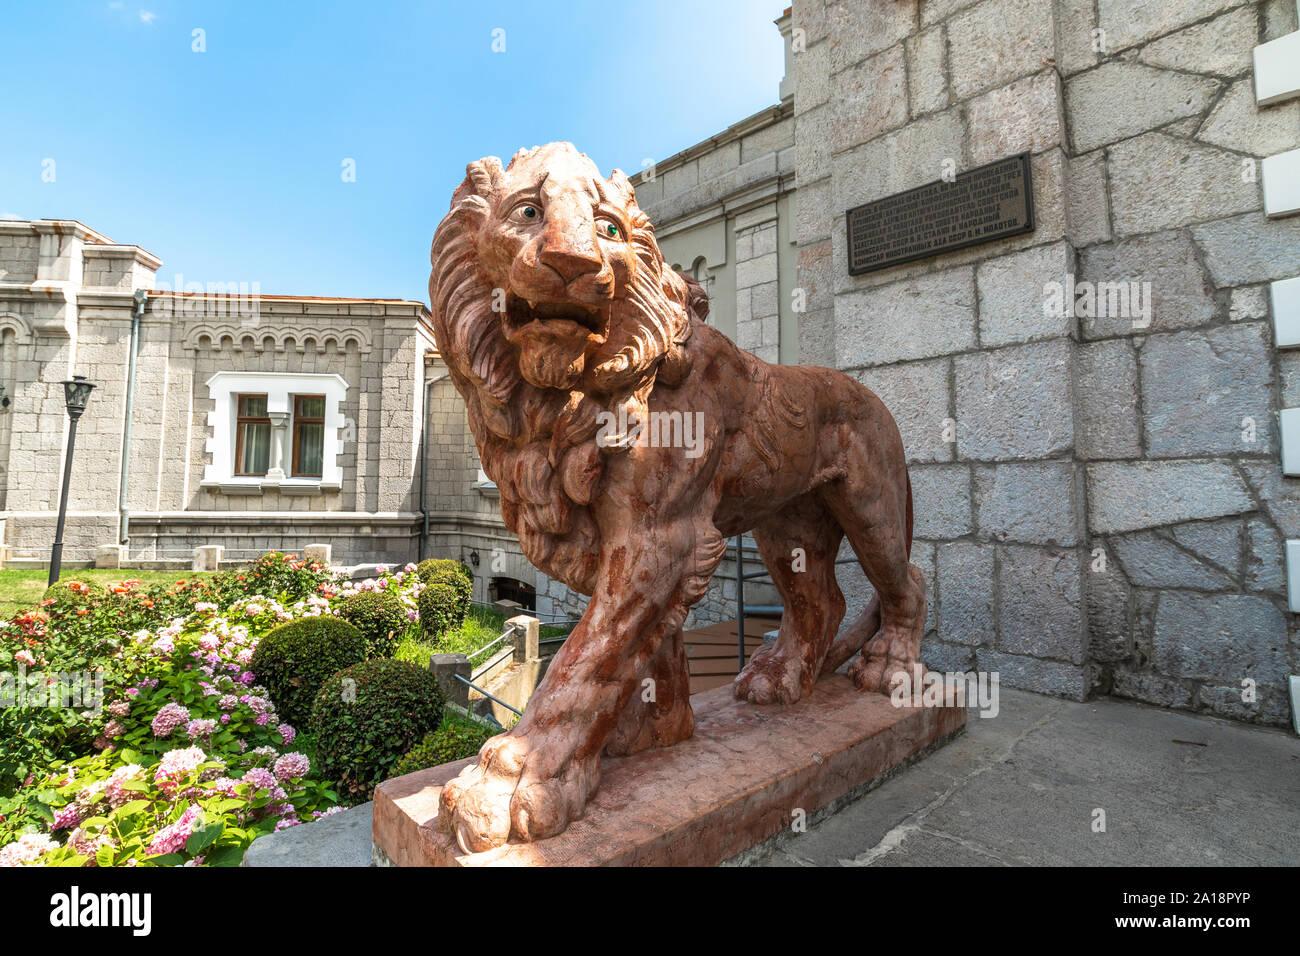 Koreiz, Crimée - juillet 10. 2019. Lion en terre cuite à l'entrée du Palais des Princes Yusupov Banque D'Images